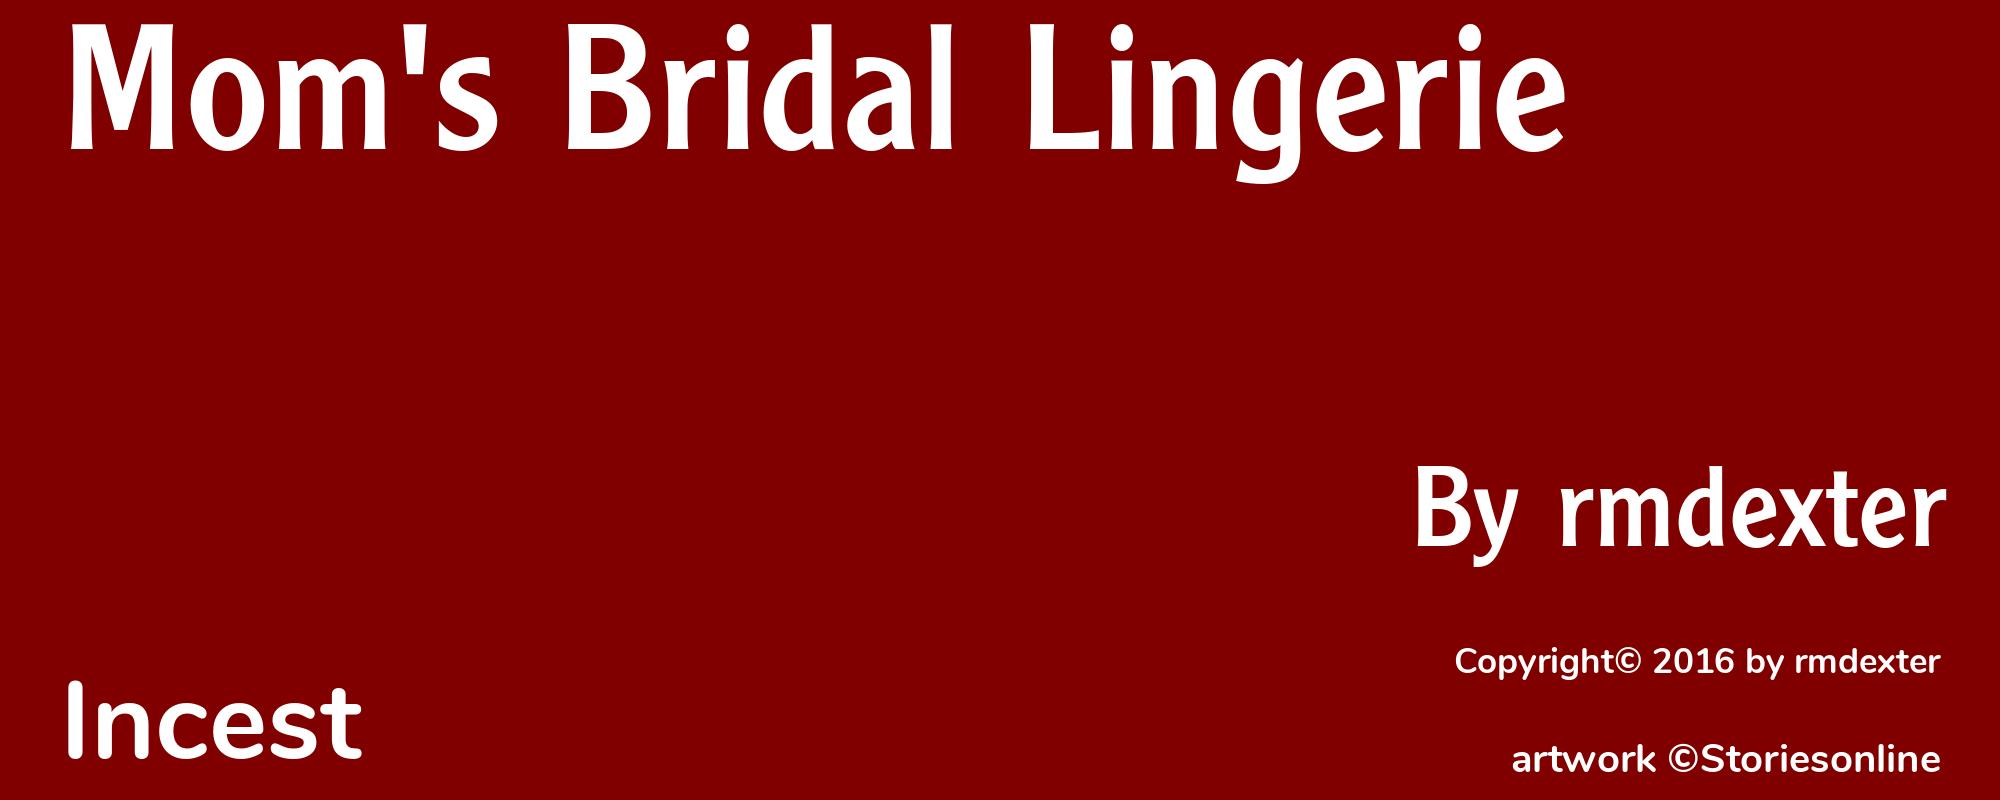 Mom's Bridal Lingerie - Cover